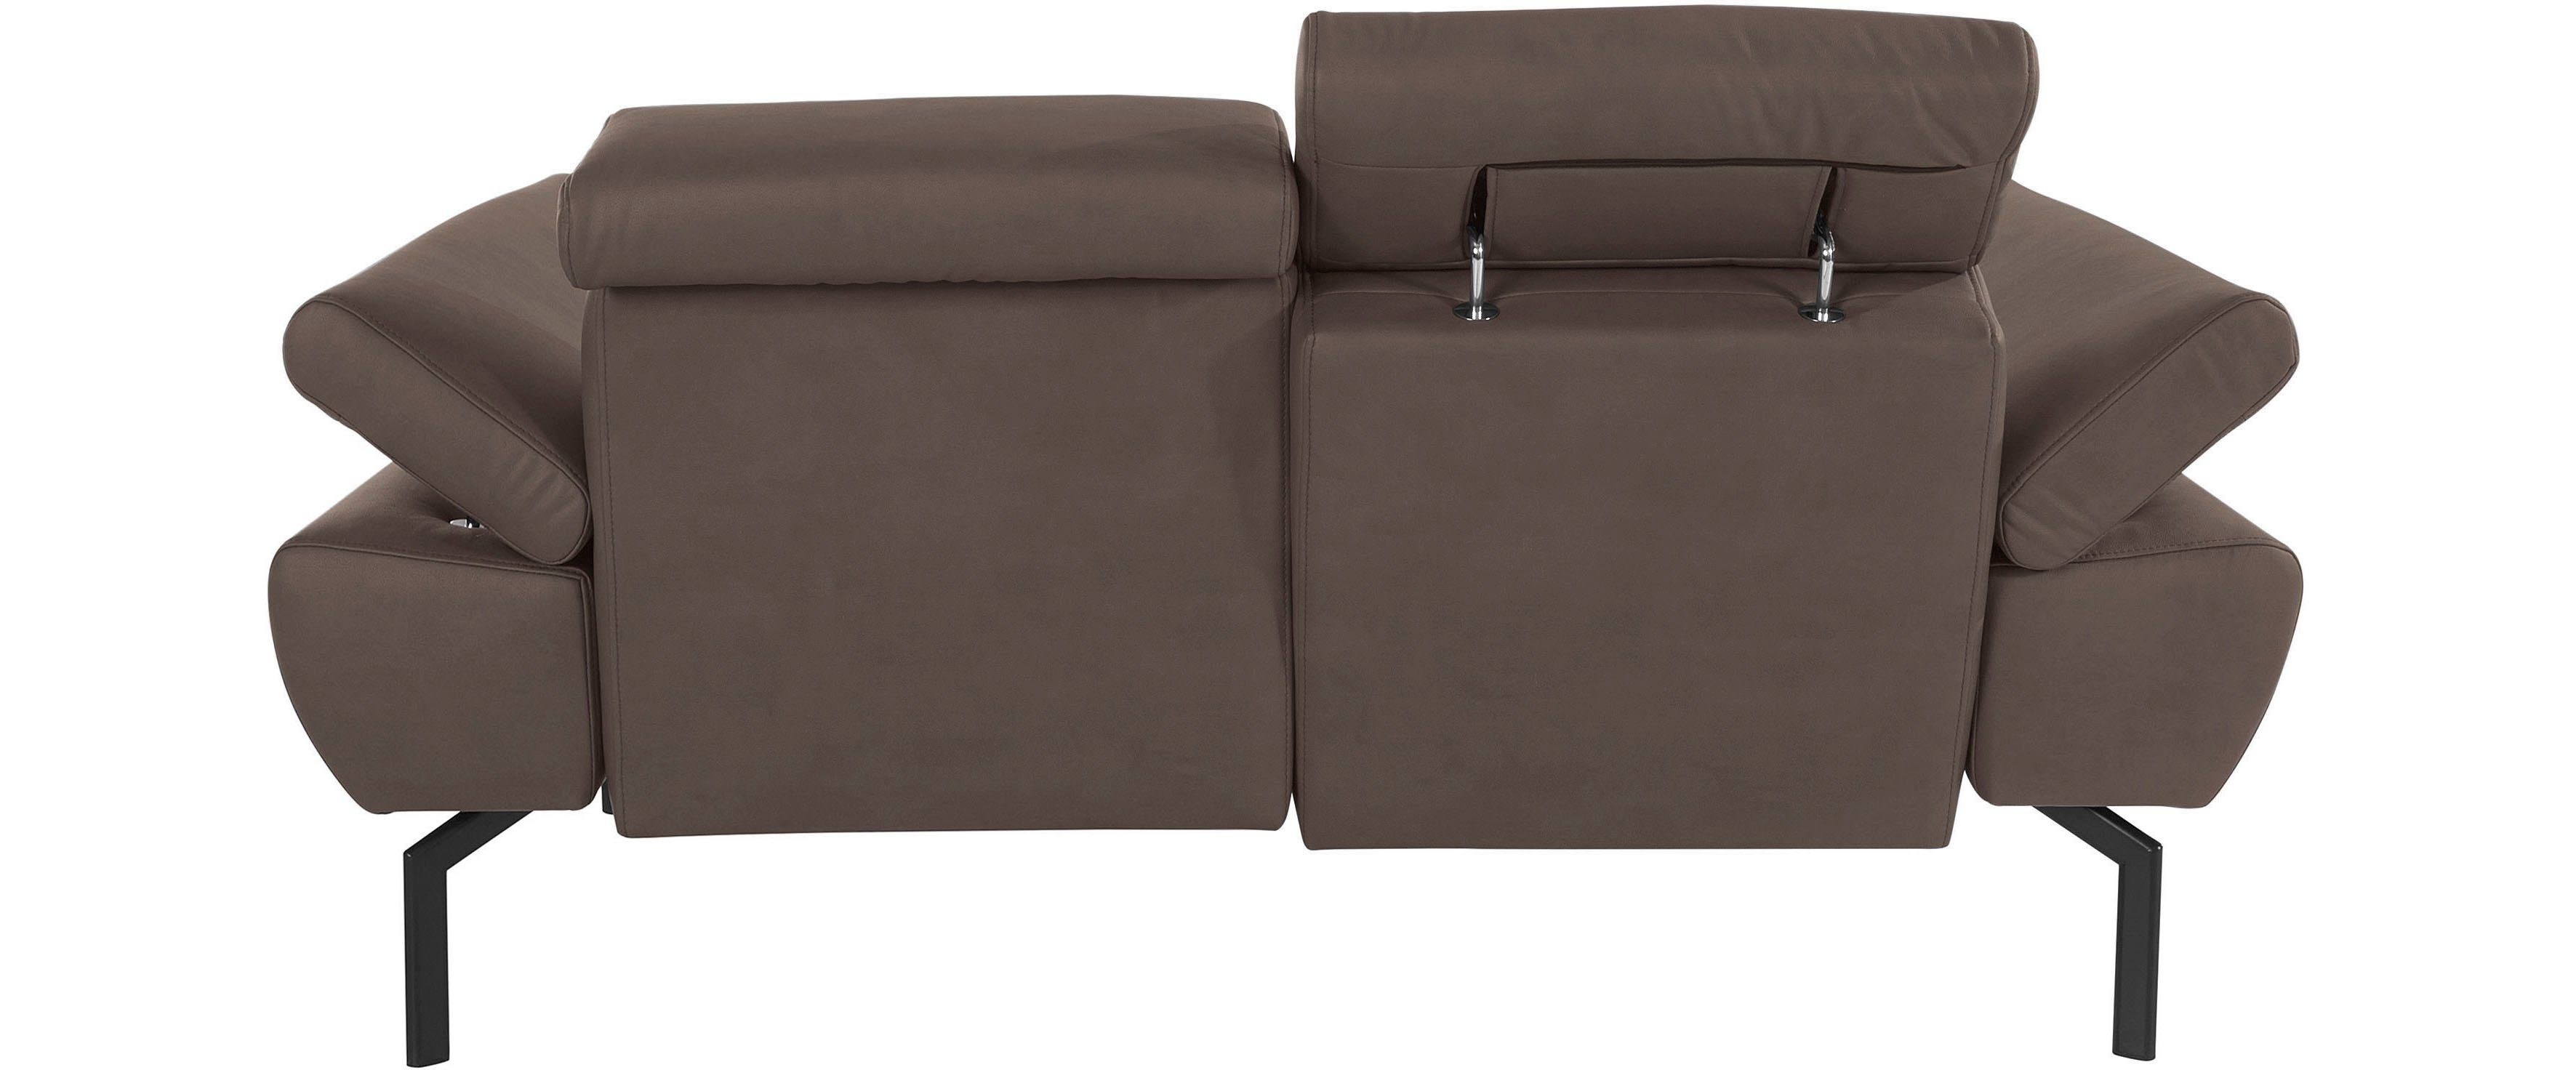 of Places Lederoptik Luxus-Microfaser Style Luxus, 2-Sitzer in wahlweise mit Rückenverstellung, Trapino